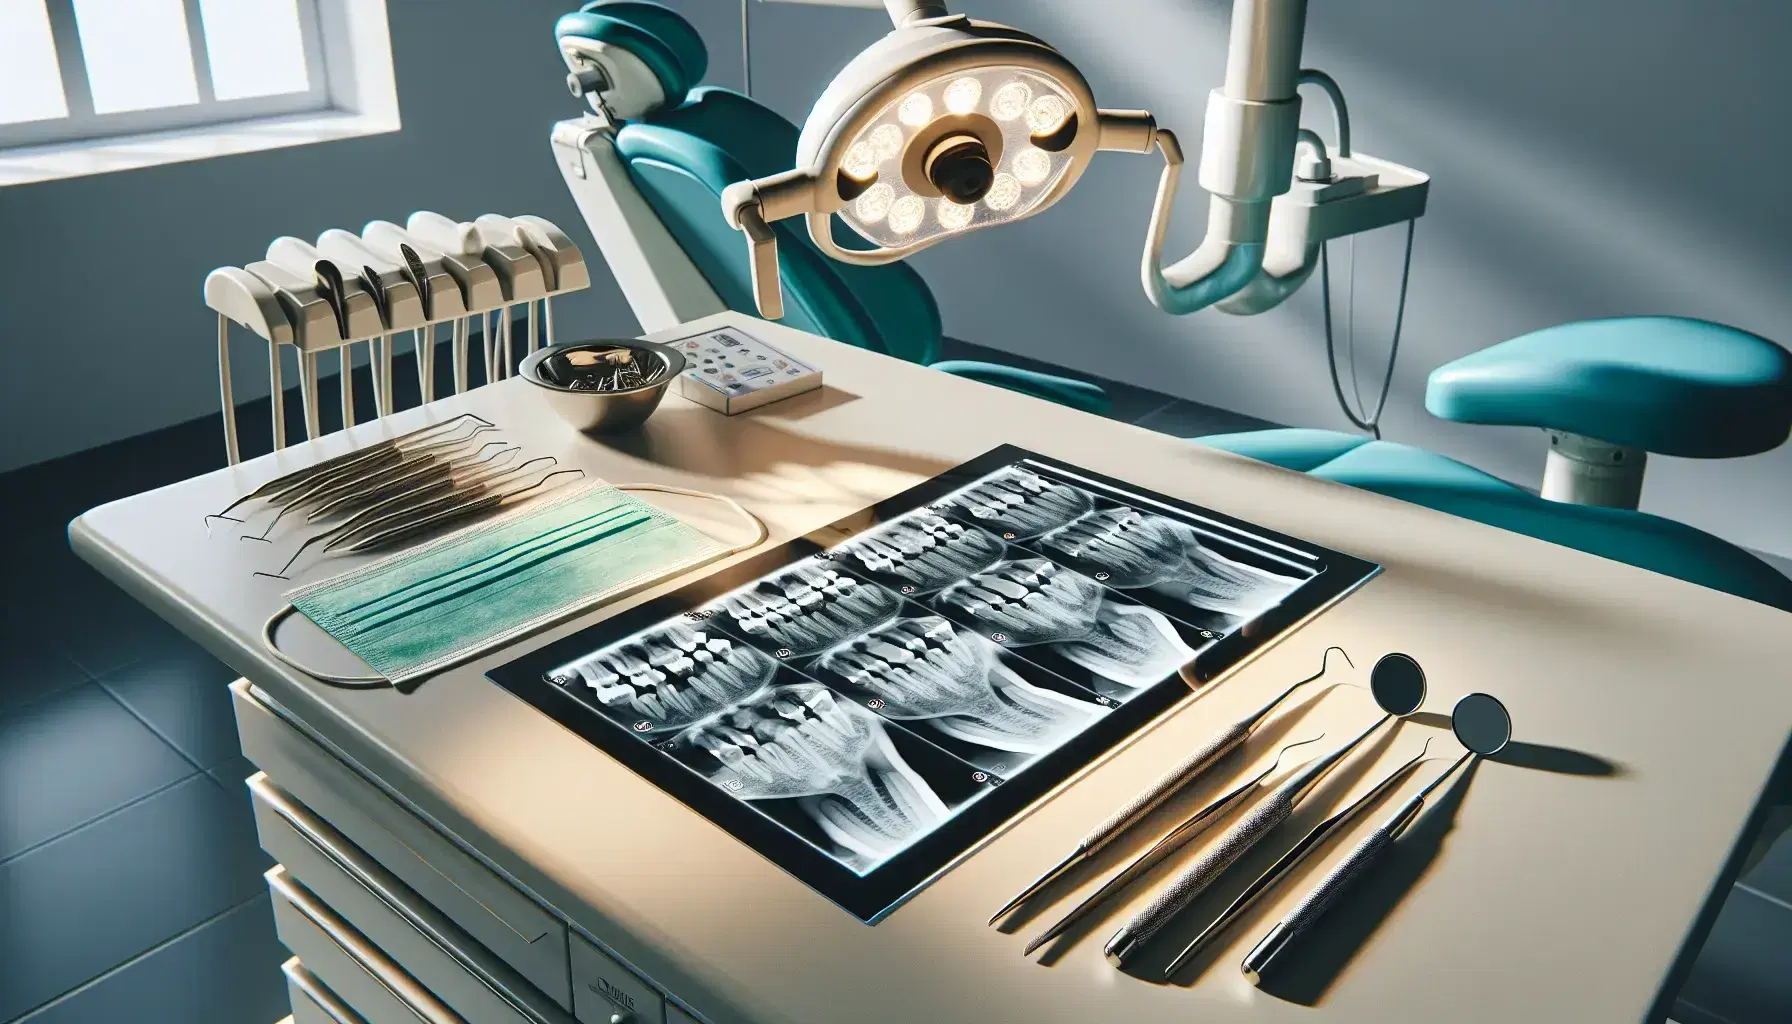 Conjunto de radiografías dentales en visor luminoso con herramientas odontológicas, guantes y mascarilla en primer plano, y silla dental desocupada al fondo.